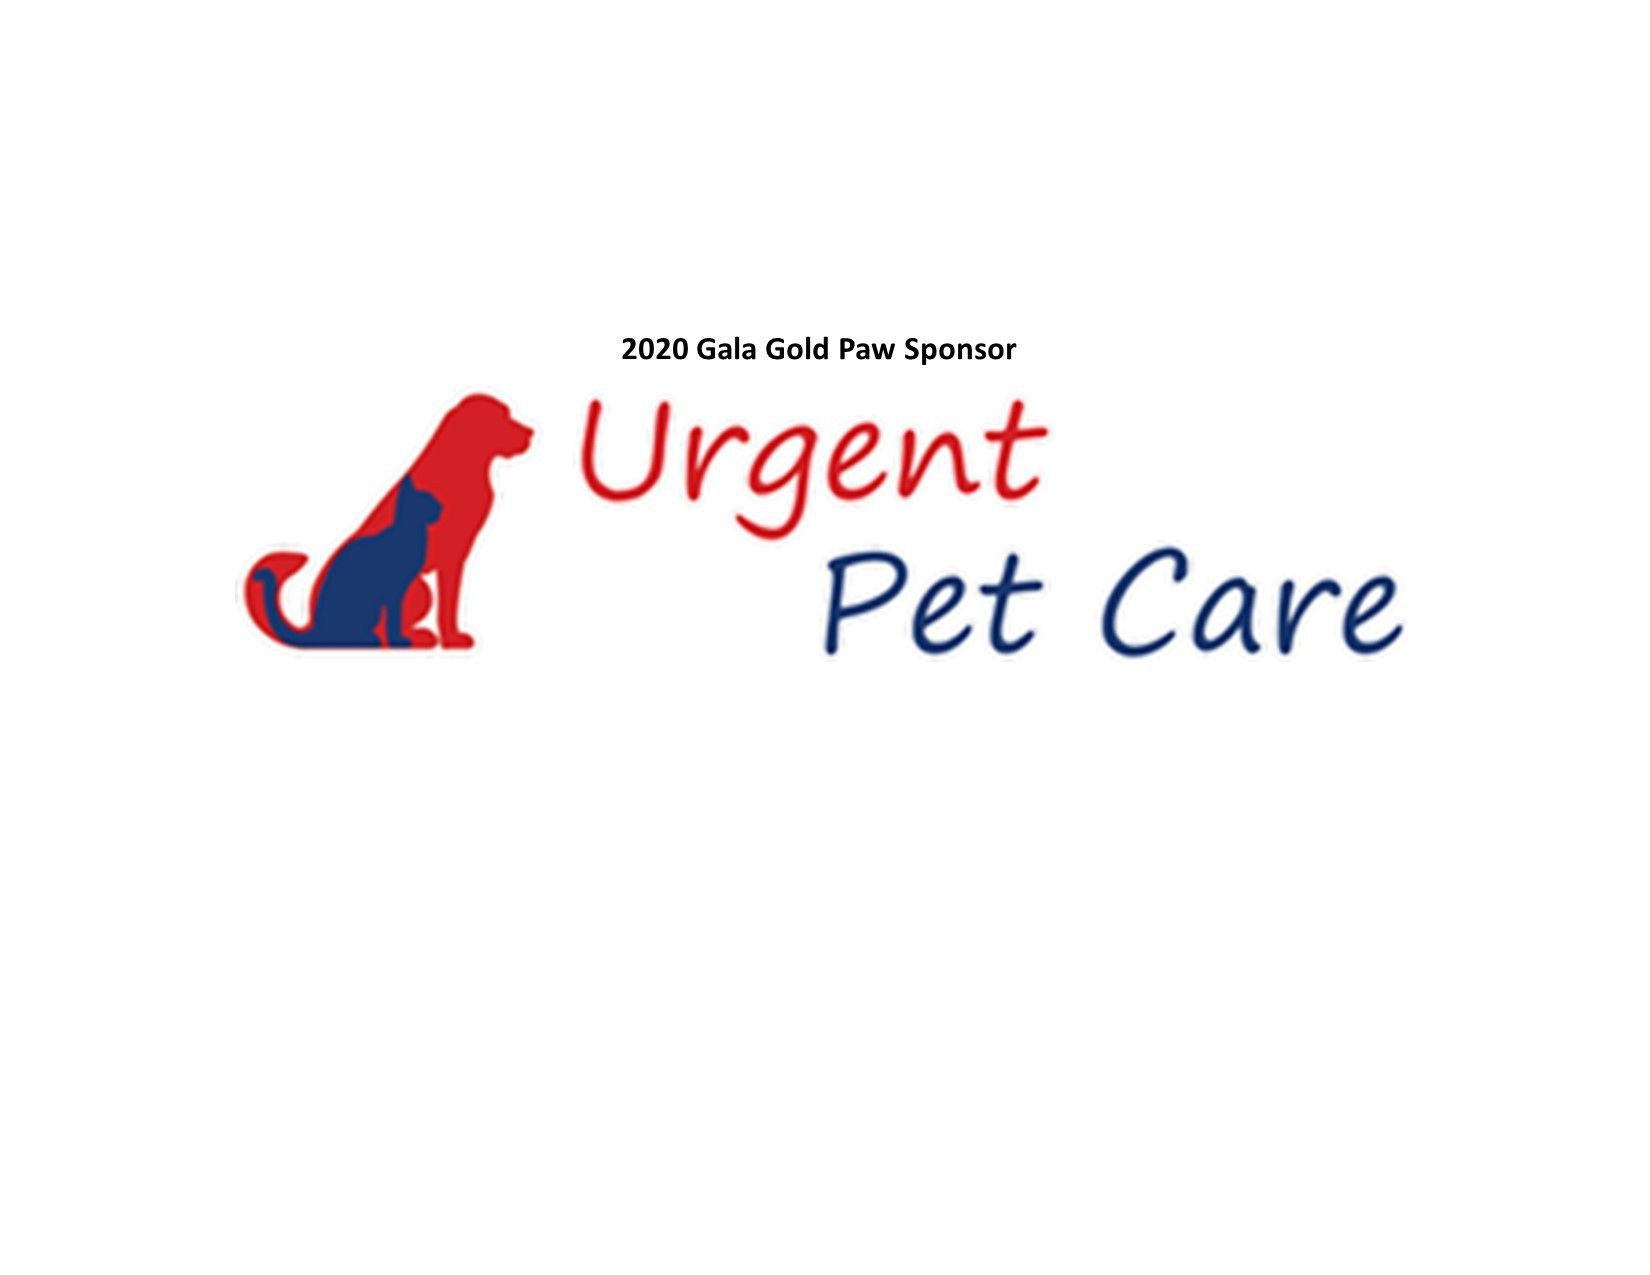 Urgent Pet Care 